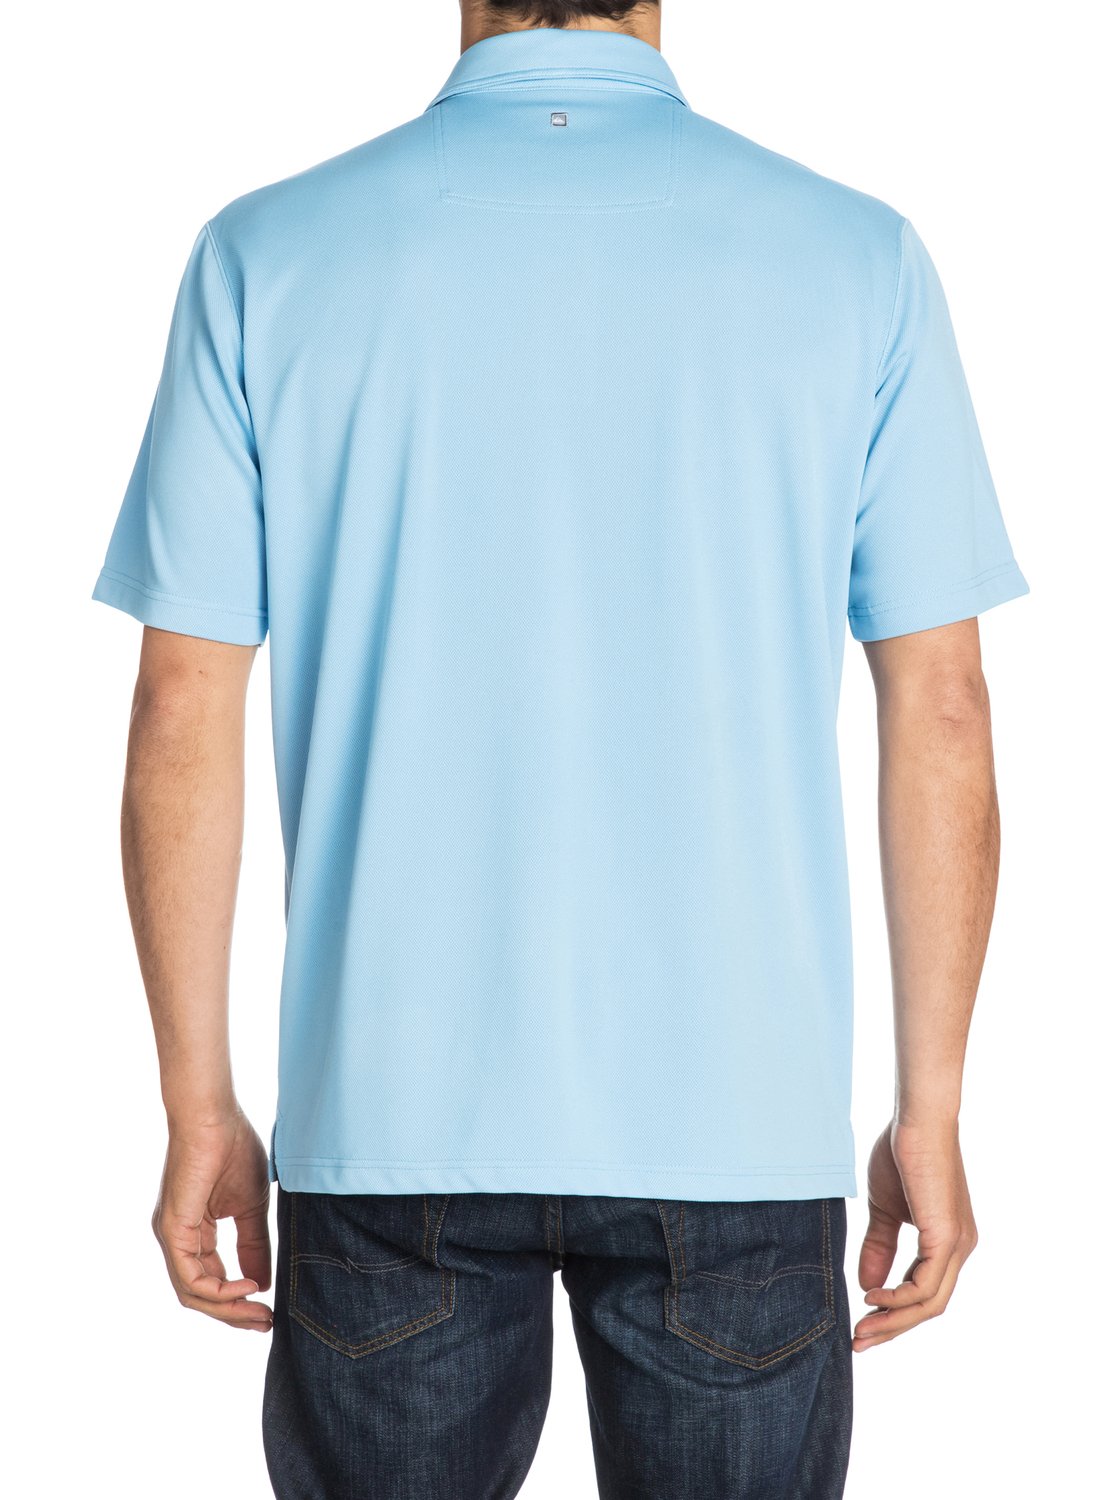 Waterman Water Polo Shirt 508610 | Quiksilver